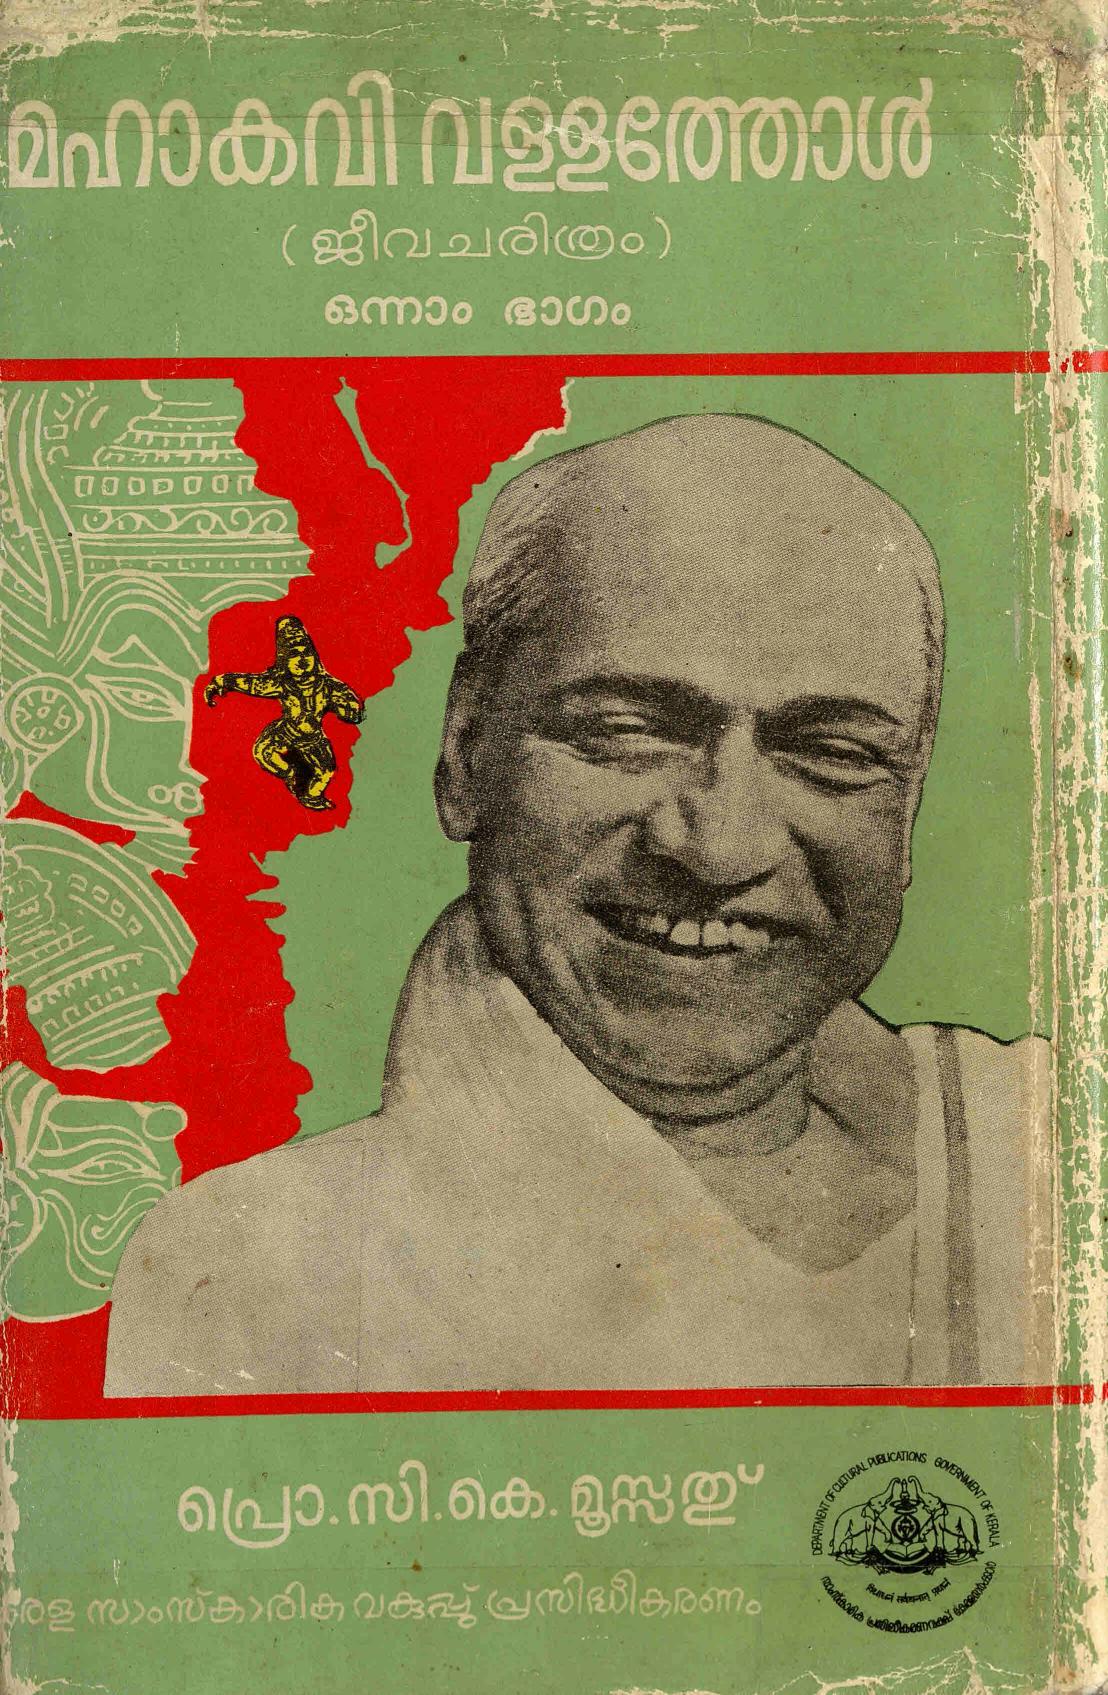 1984 - 1989 - മഹാകവി വള്ളത്തോൾ - ജീവചരിത്രം - ഒന്നും രണ്ടും ഭാഗങ്ങൾ - സി. കെ. മൂസ്സത്